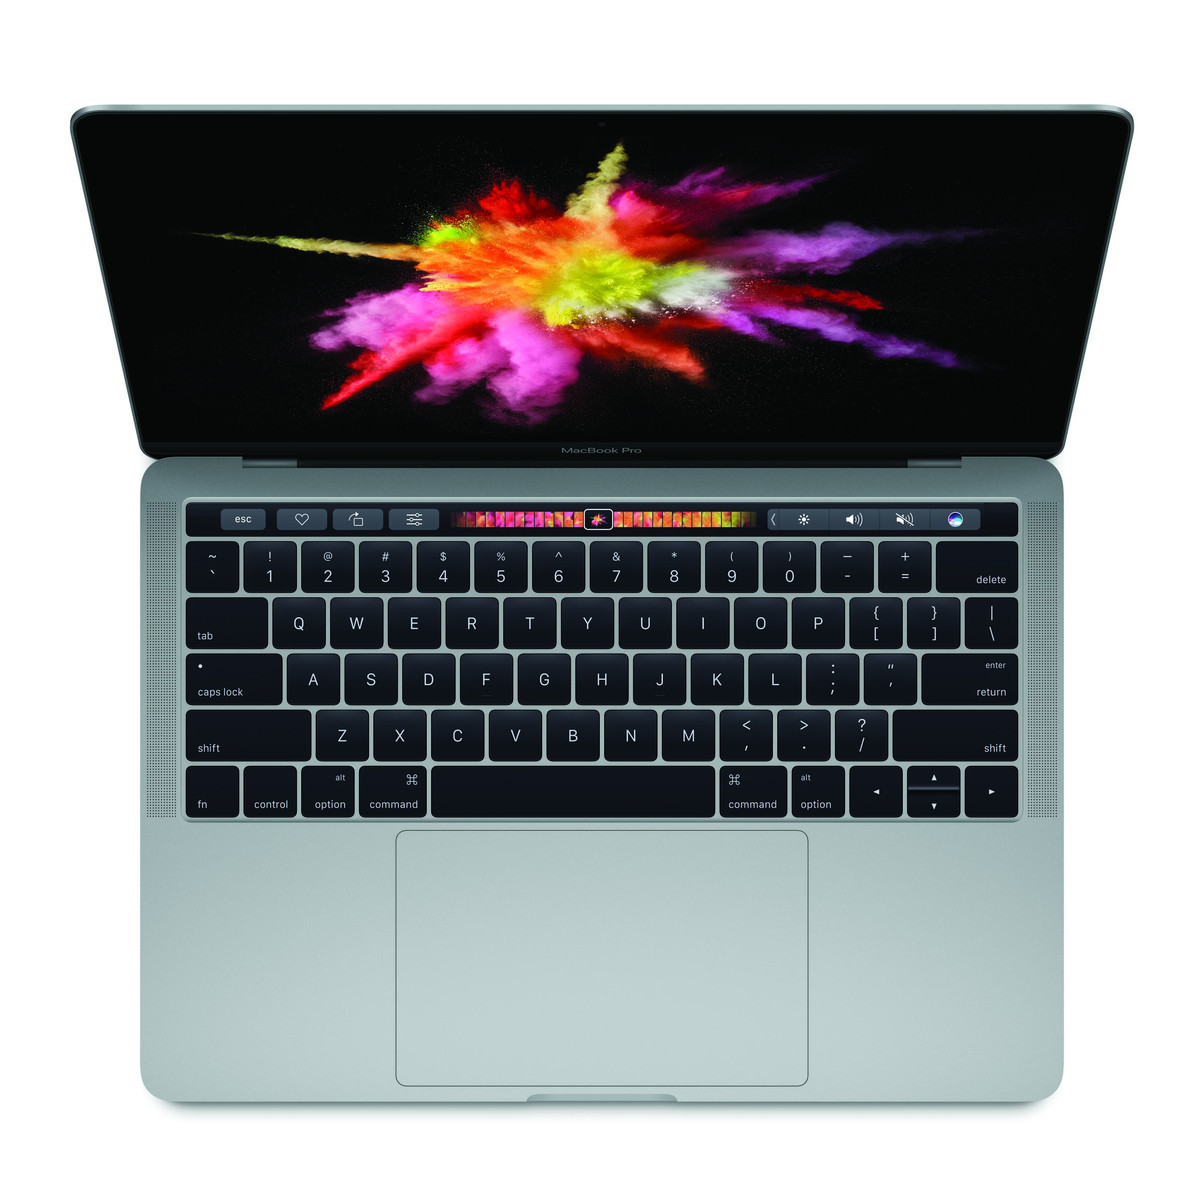 Apple MacBook Pro 13 2017 Series - Notebookcheck.net External Reviews